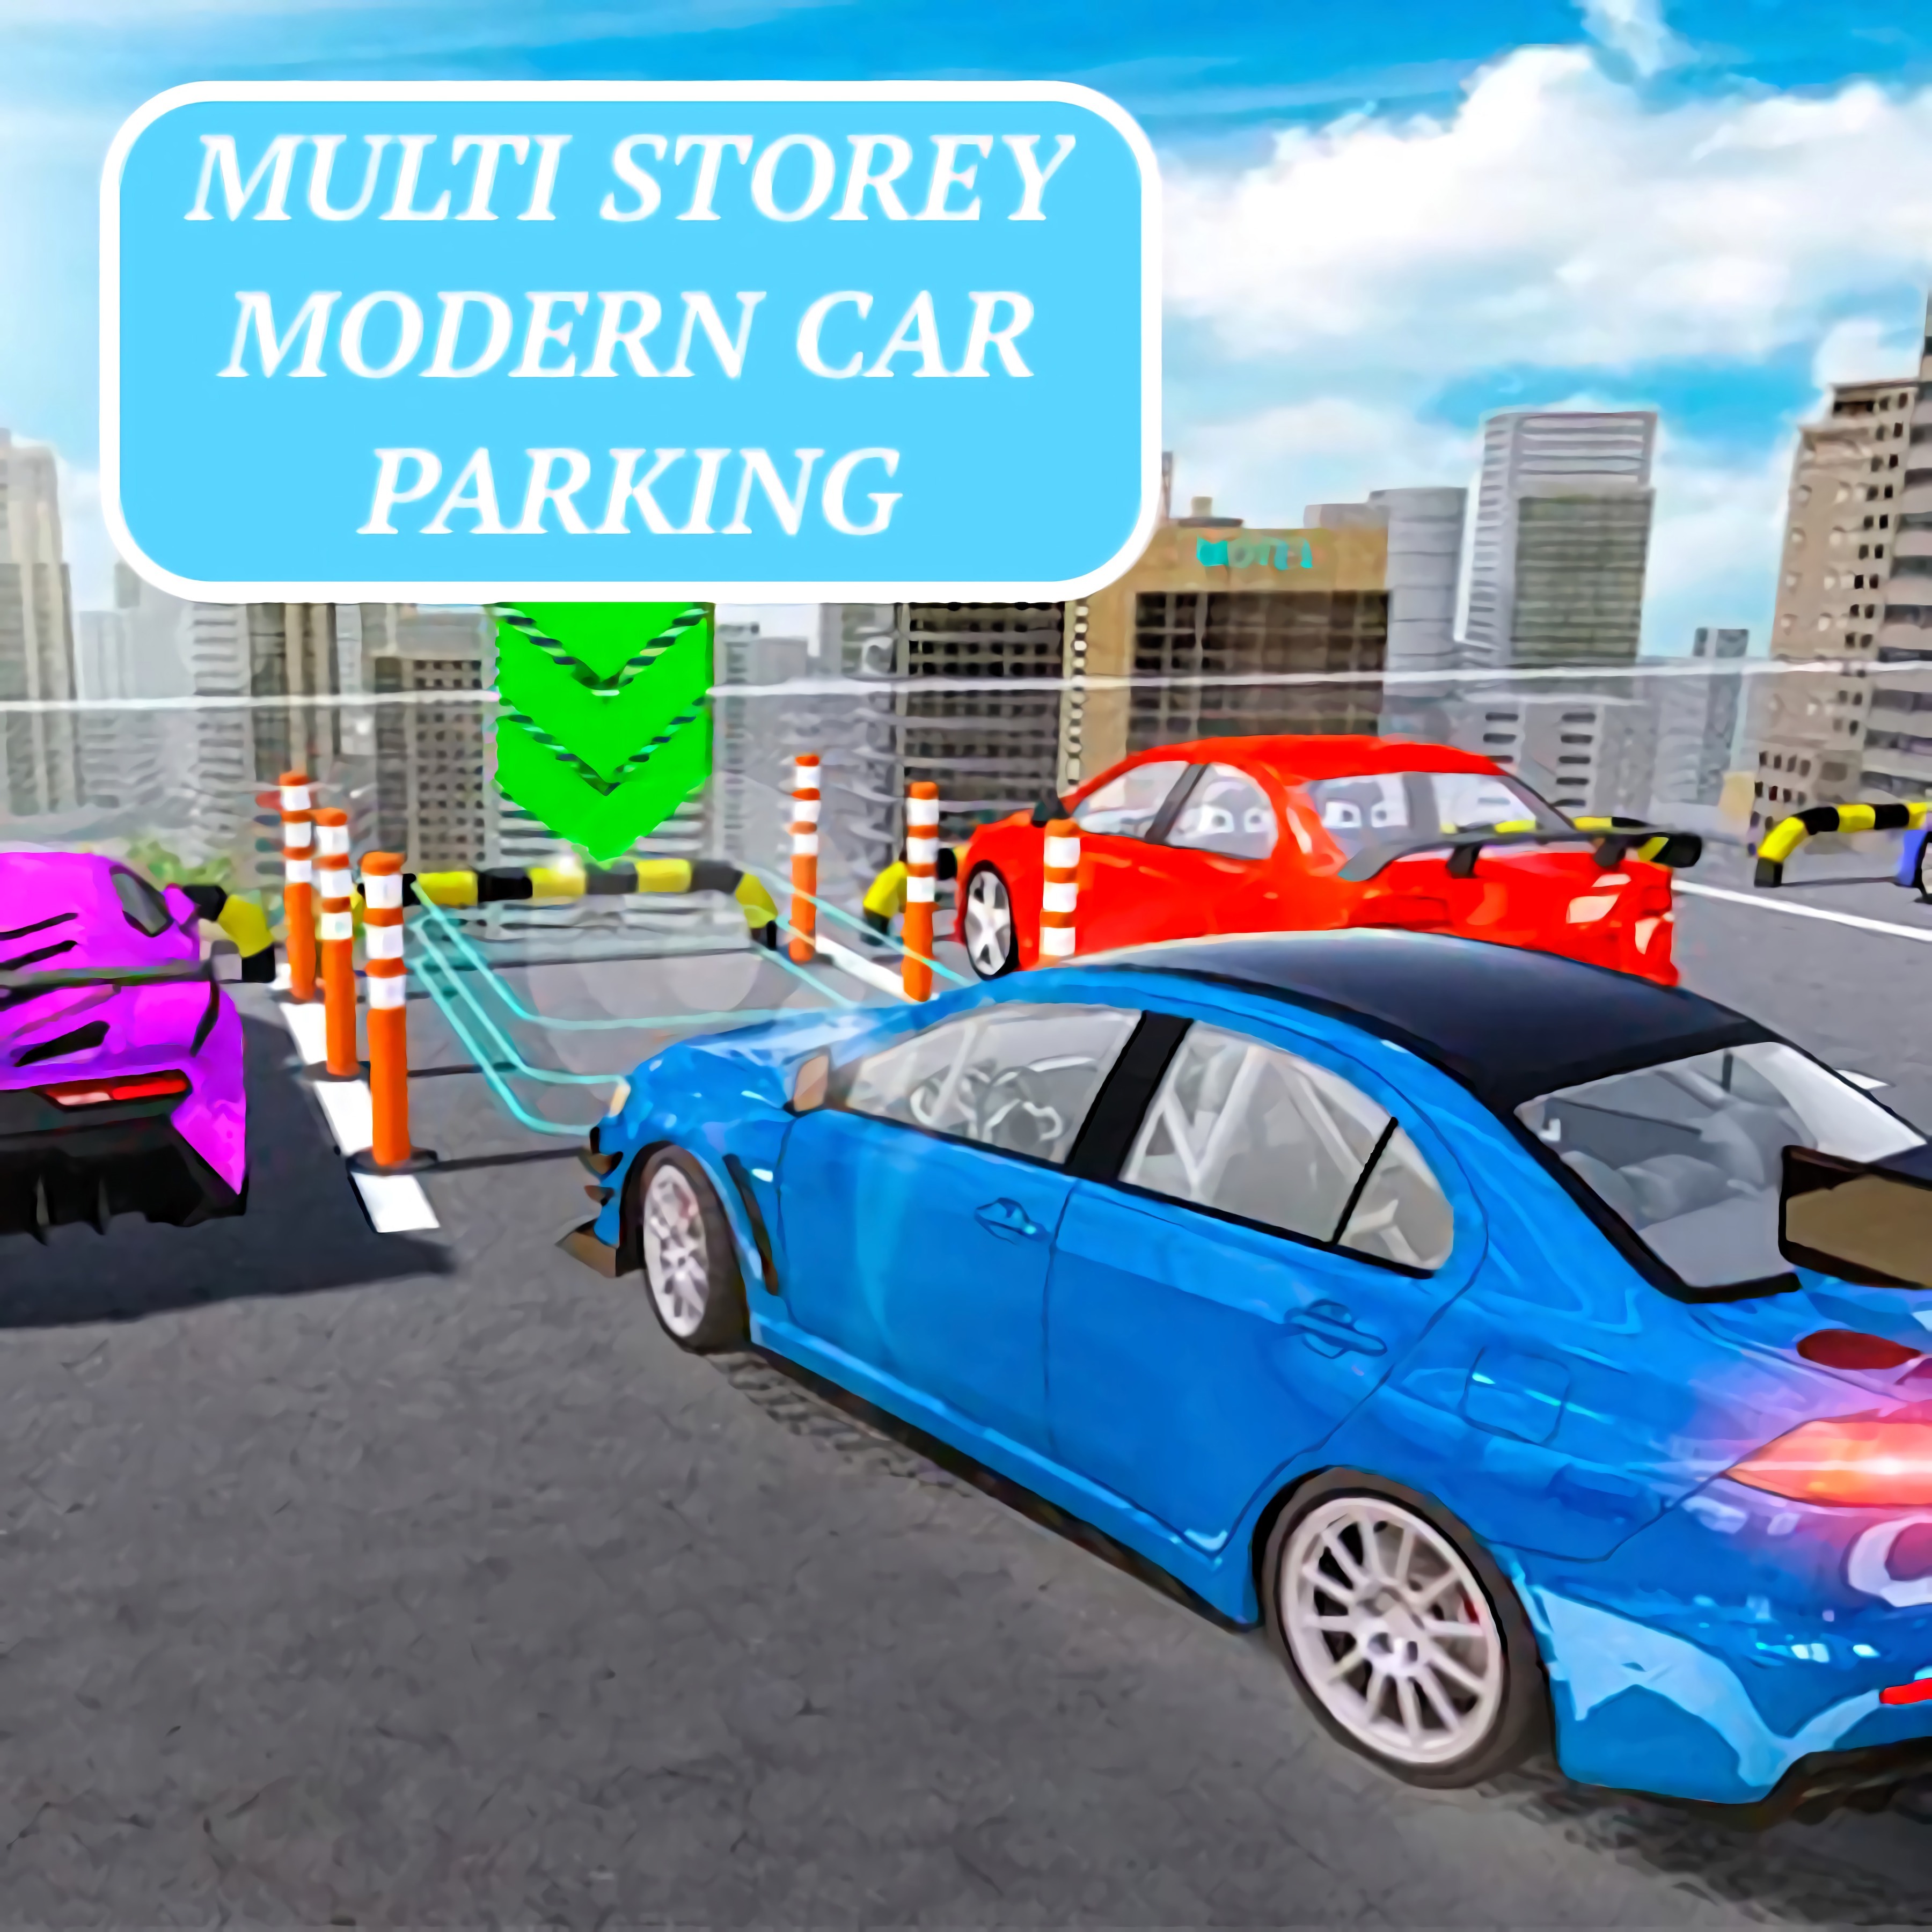 Multi Storey Modern Car Parking